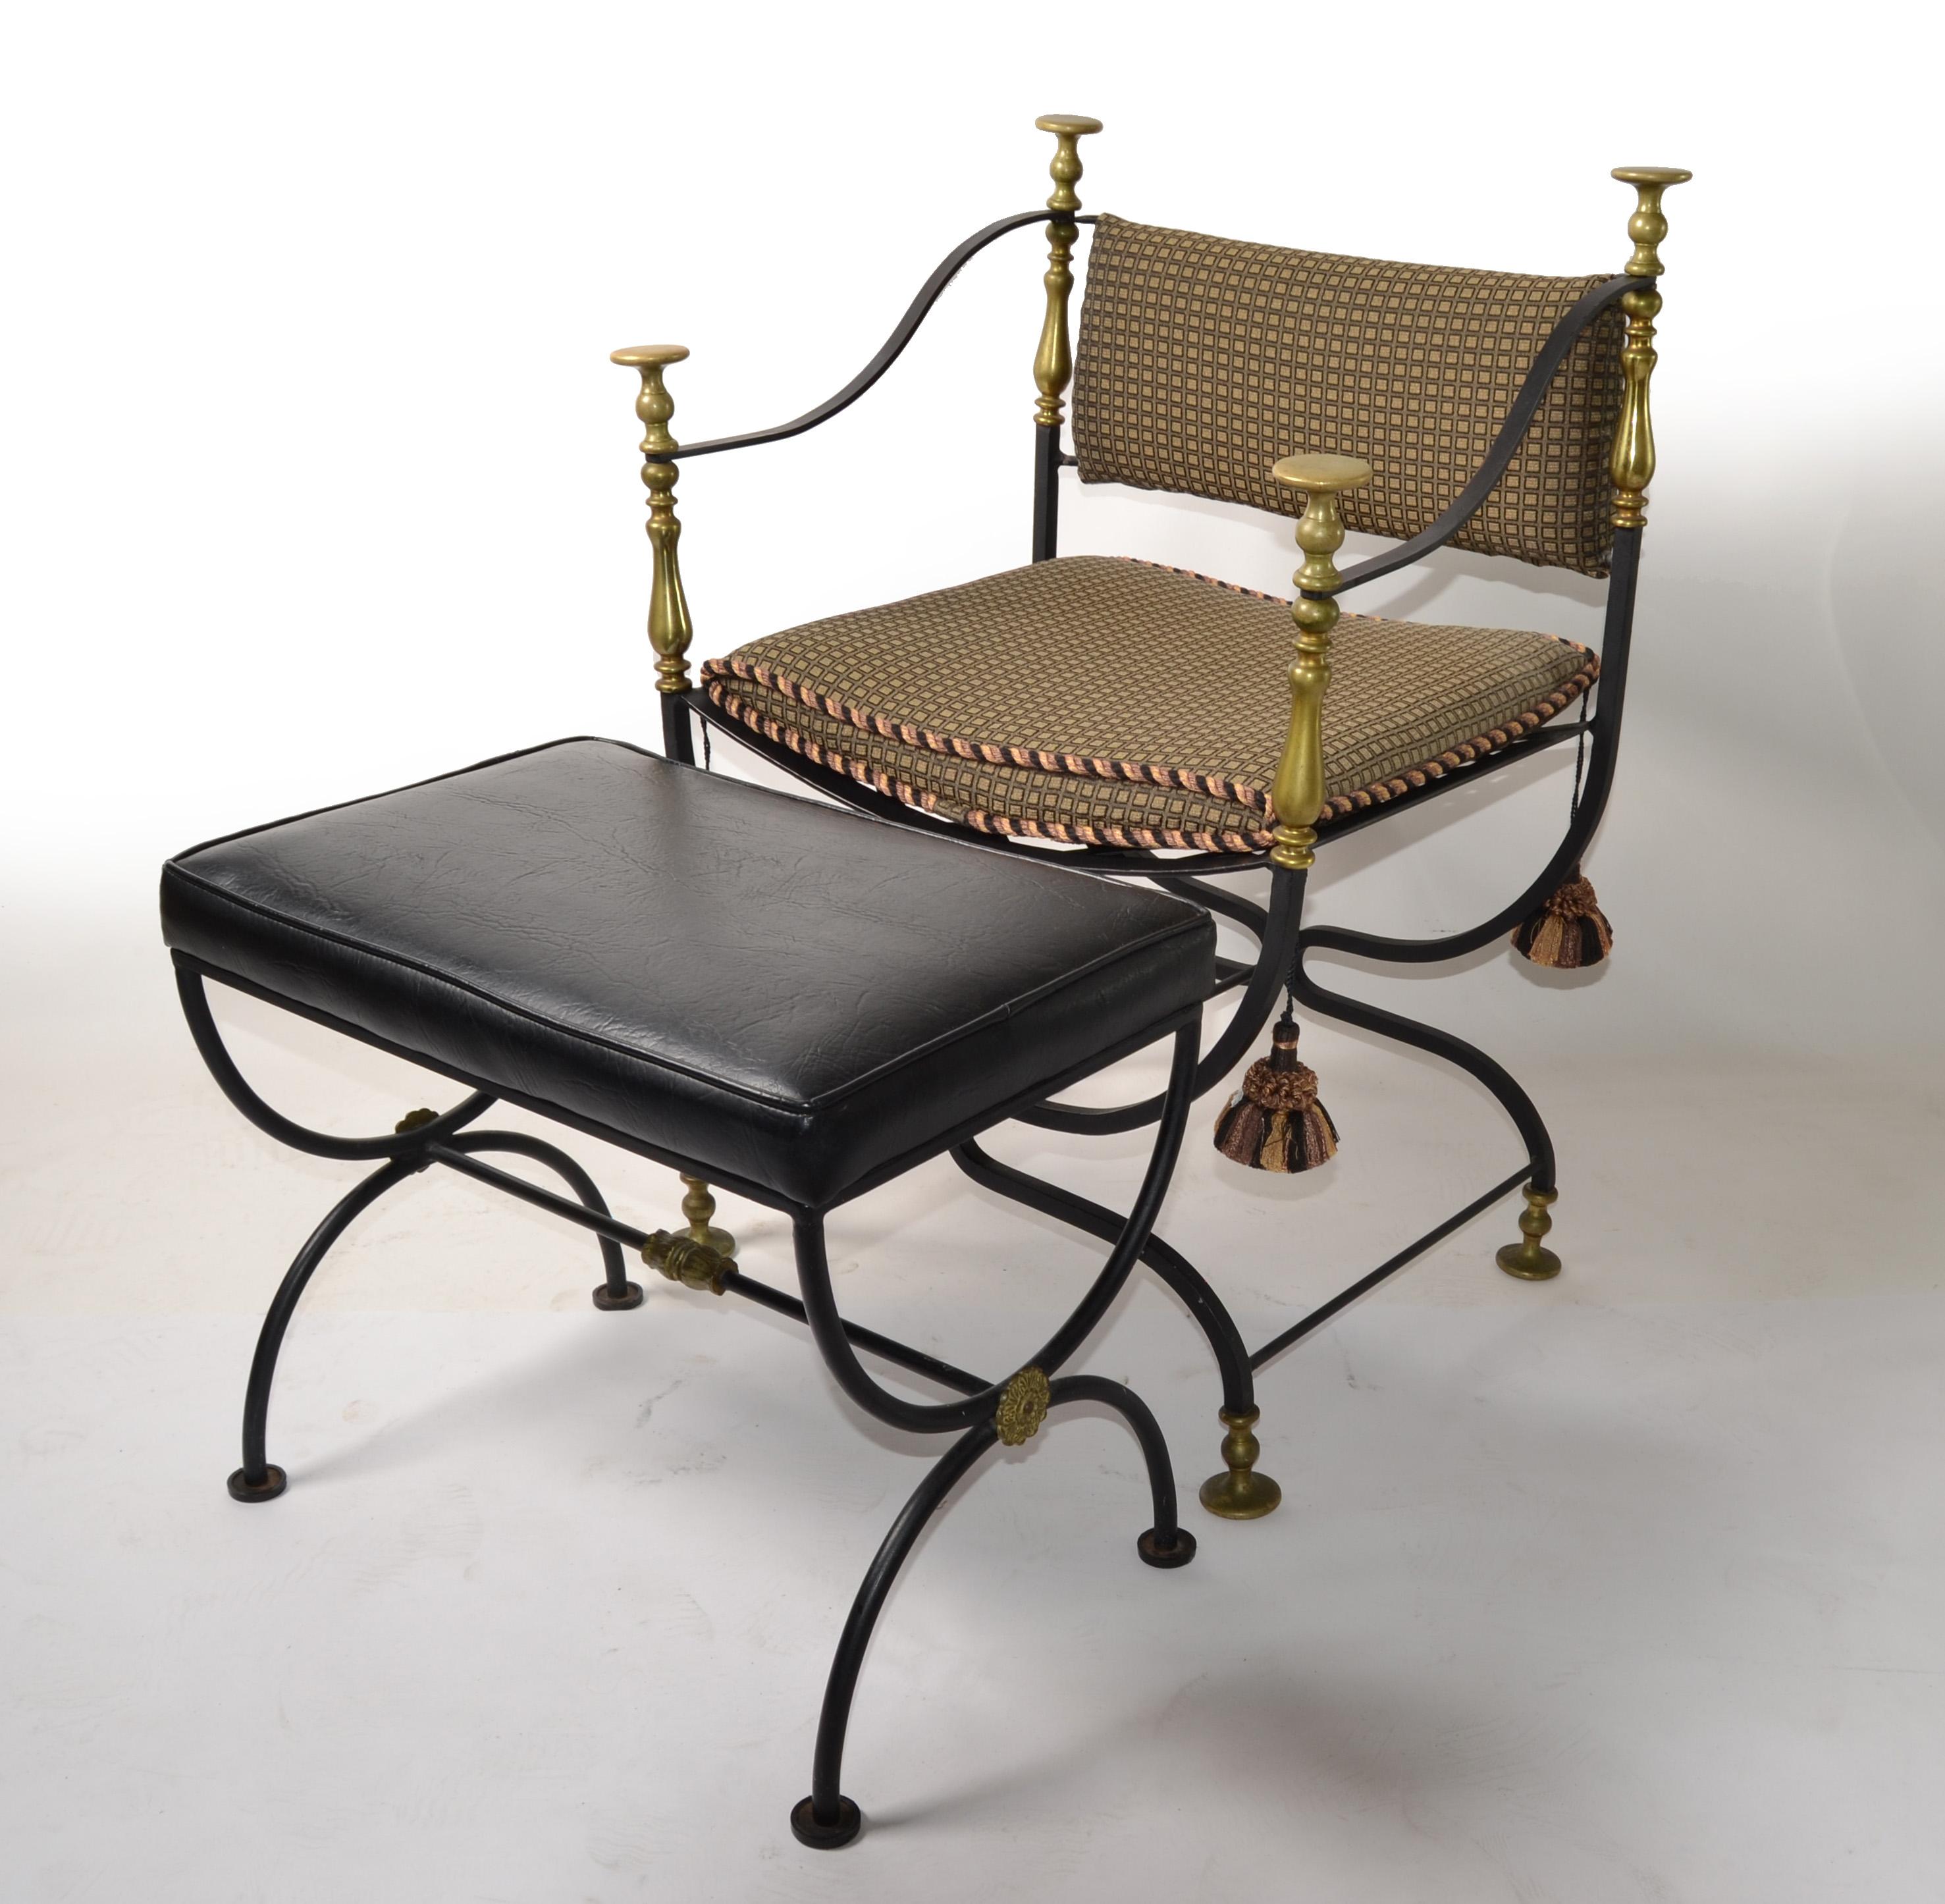 Ensemble Faldistori, fauteuil Savonarola et pouf ou banc en fer forgé, avec boutons et médaillons en bronze poli d'origine et ornements en laiton.
La chaise d'appoint a les coussins d'assise et de dossier d'origine.
Le banc à base arquée est